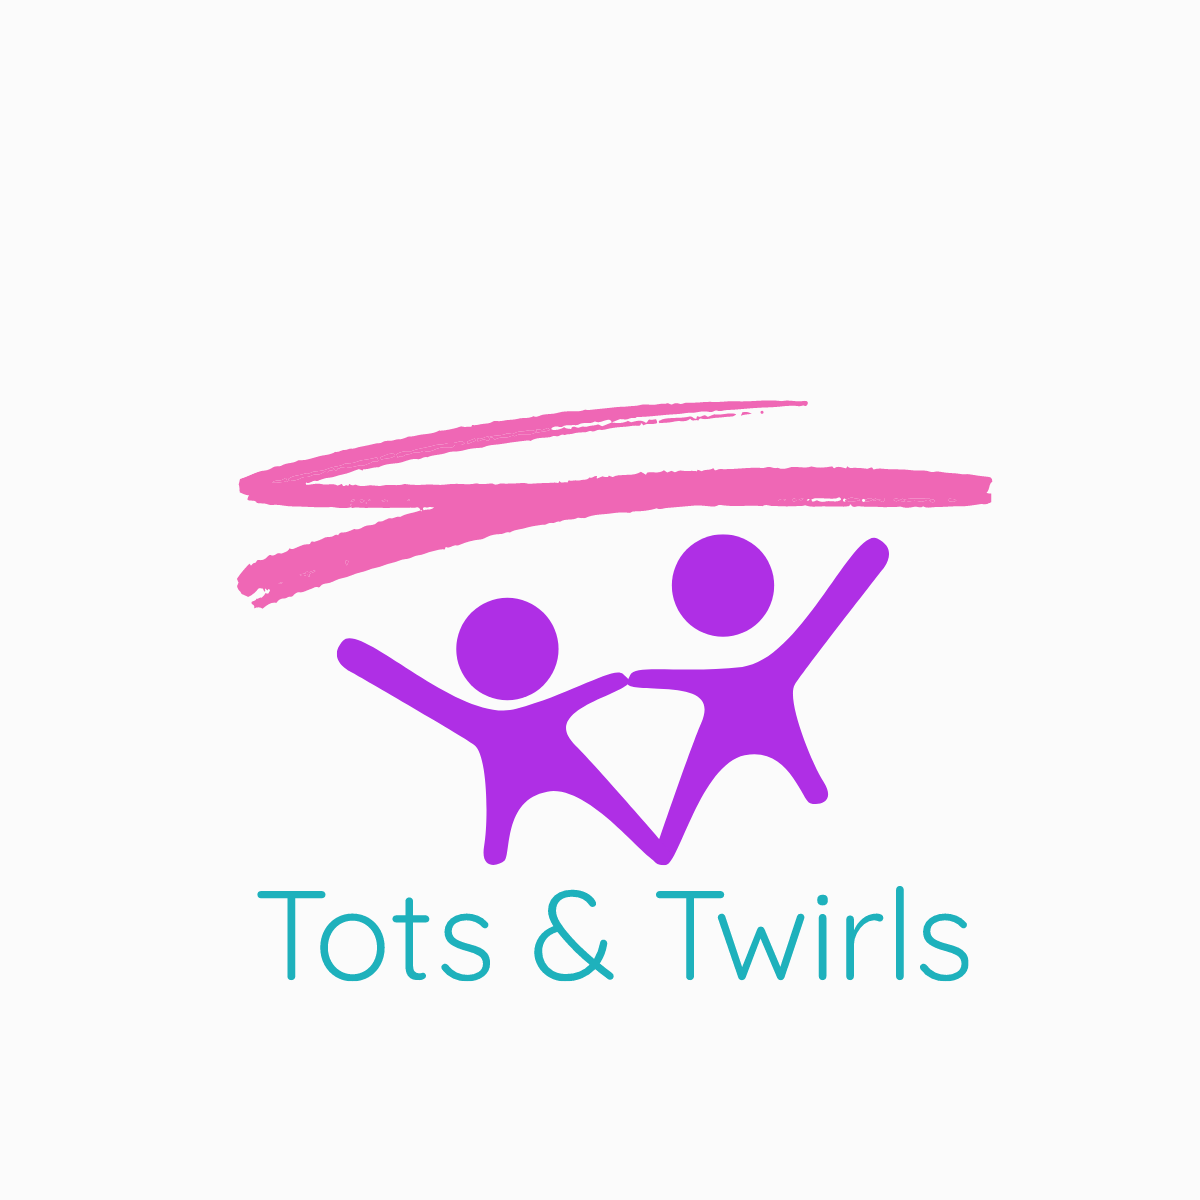 Tots & Twirls's logo